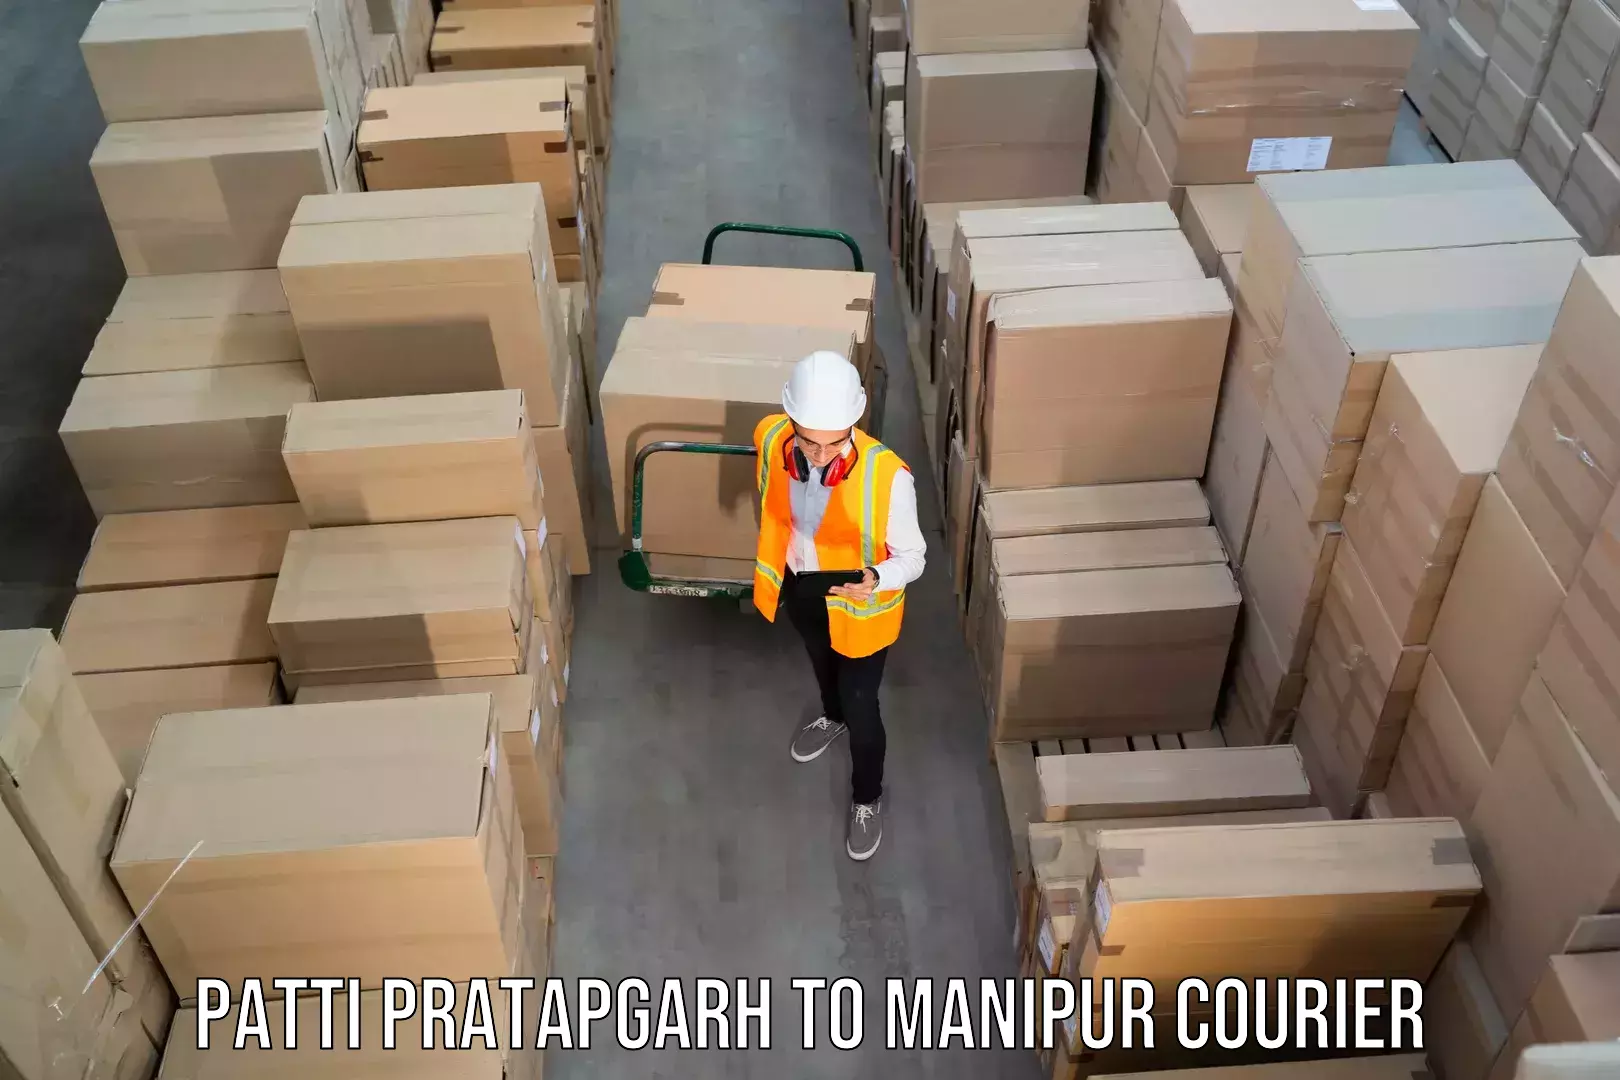 Reliable courier service Patti Pratapgarh to IIIT Senapati